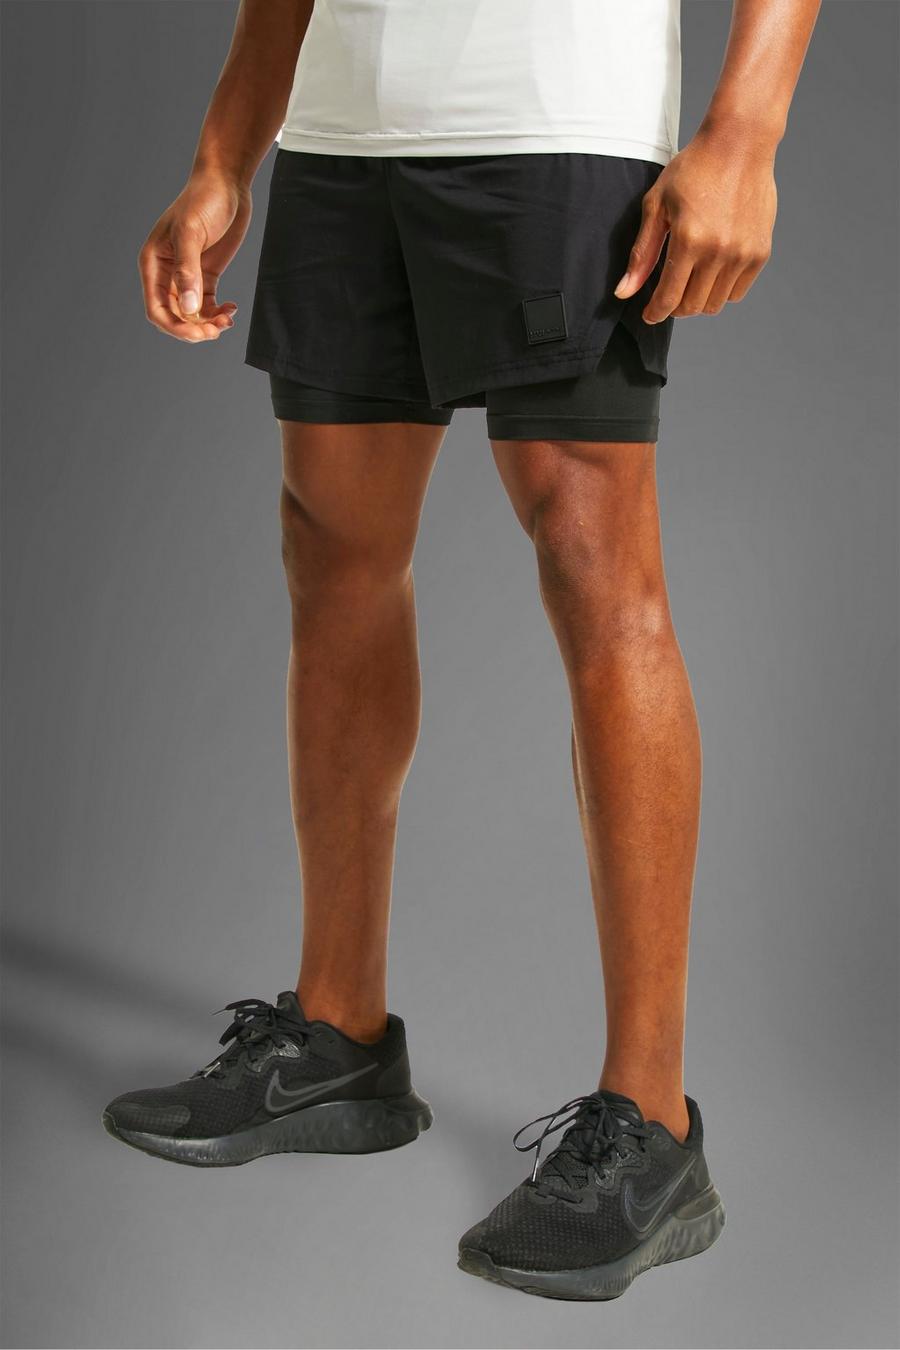 Pantalón corto MAN Active resistente 2 en 1, Black nero